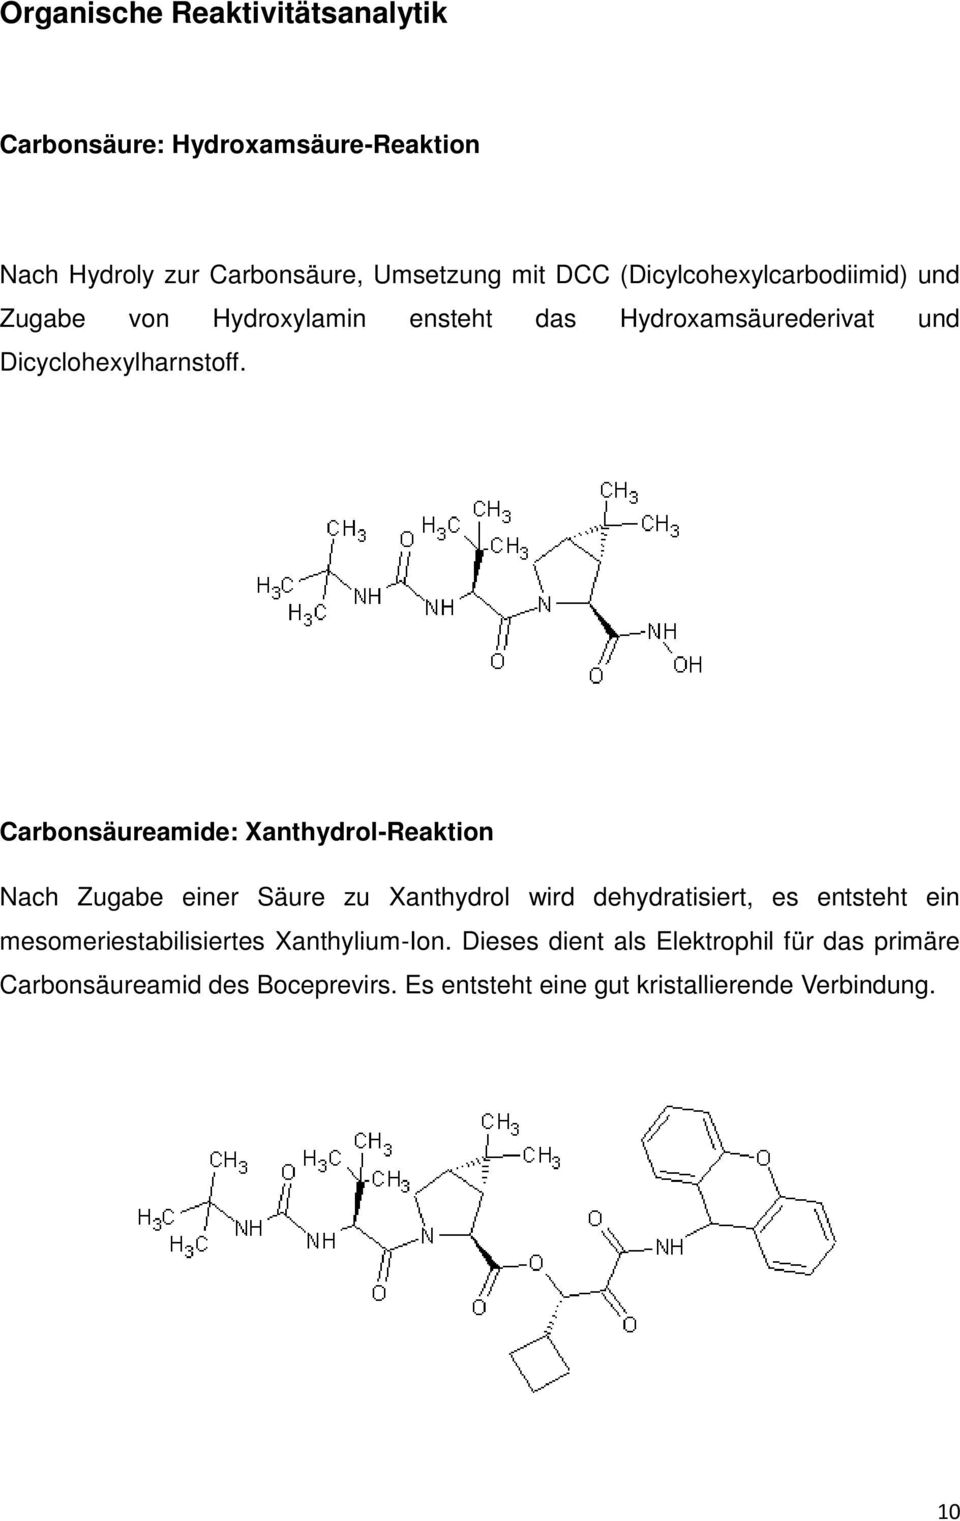 Carbonsäureamide: Xanthydrol-Reaktion Nach Zugabe einer Säure zu Xanthydrol wird dehydratisiert, es entsteht ein